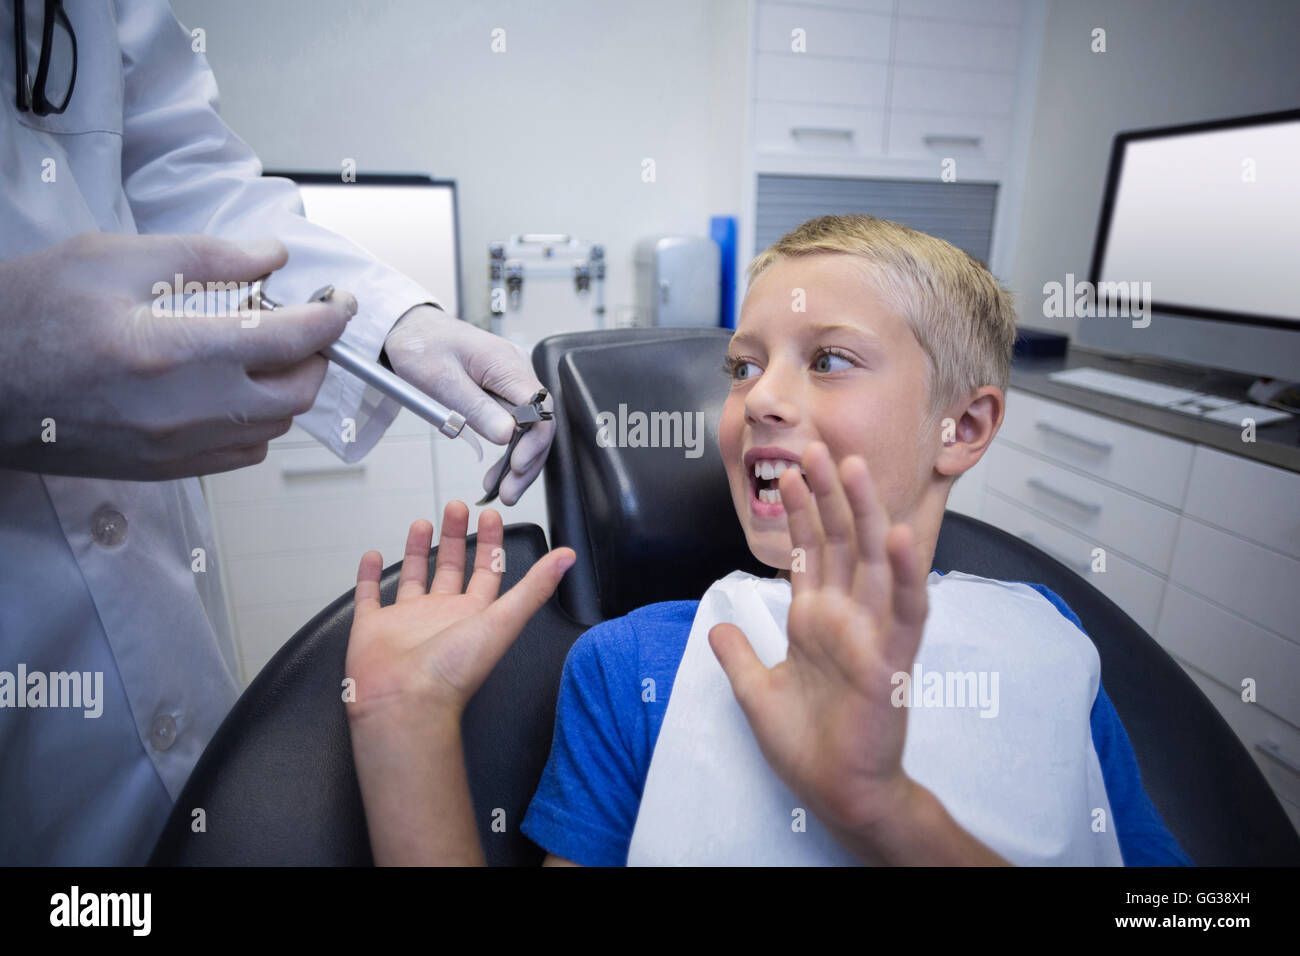 Jeune patient effrayé pendant un examen dentaire Banque D'Images